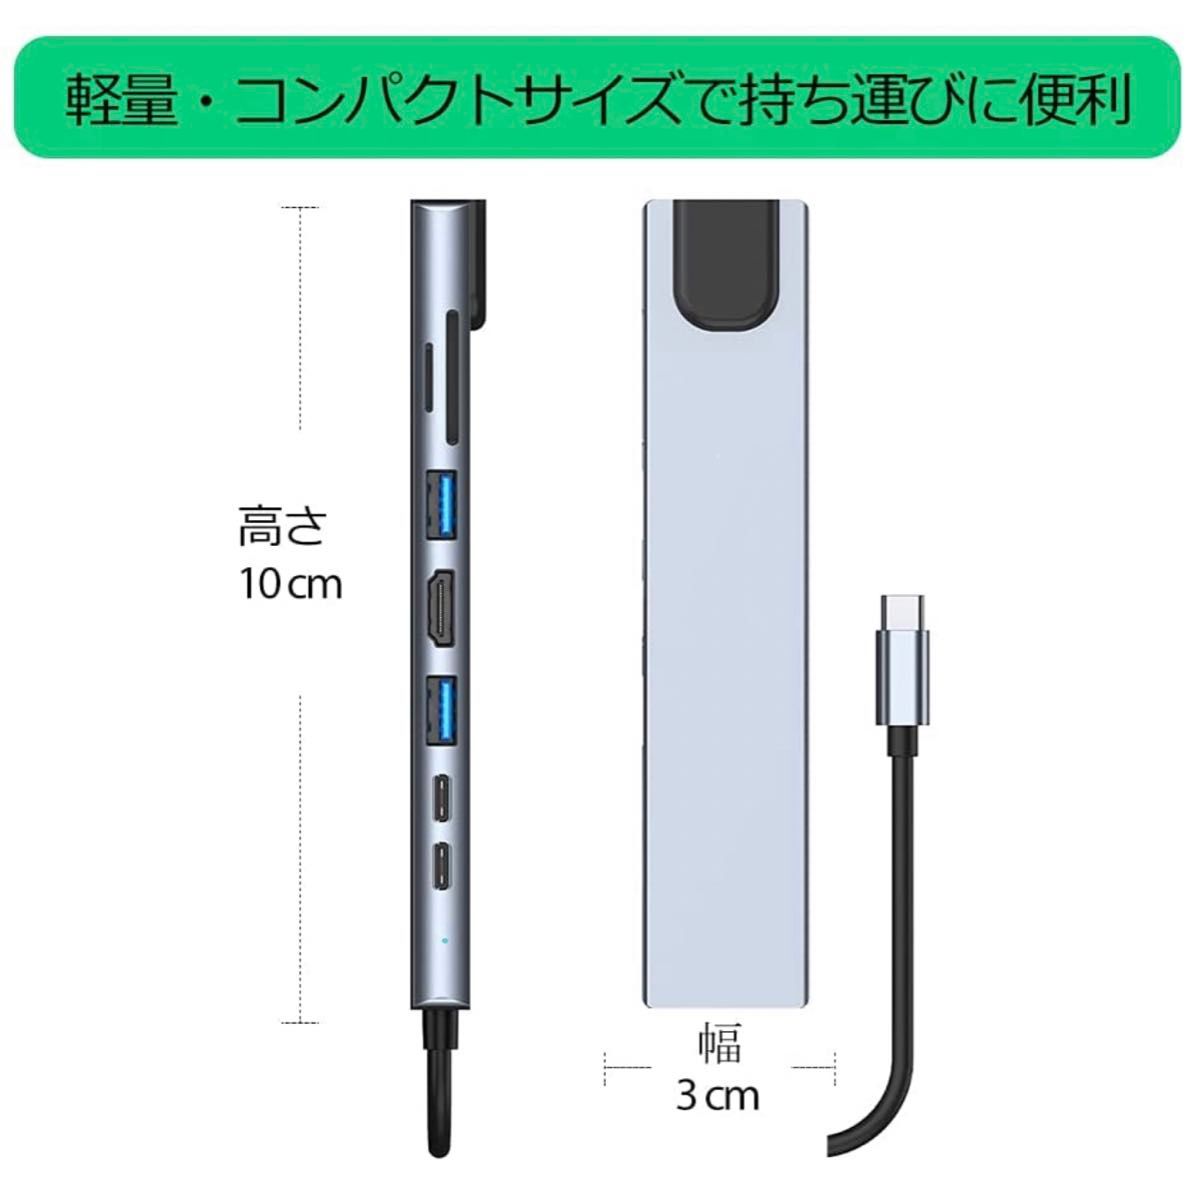 USB C ハブ アダプタ ８-in-1 Type-C USBハブ 4K HDMI出力 USB3.0 SD/TFカードリーダー 